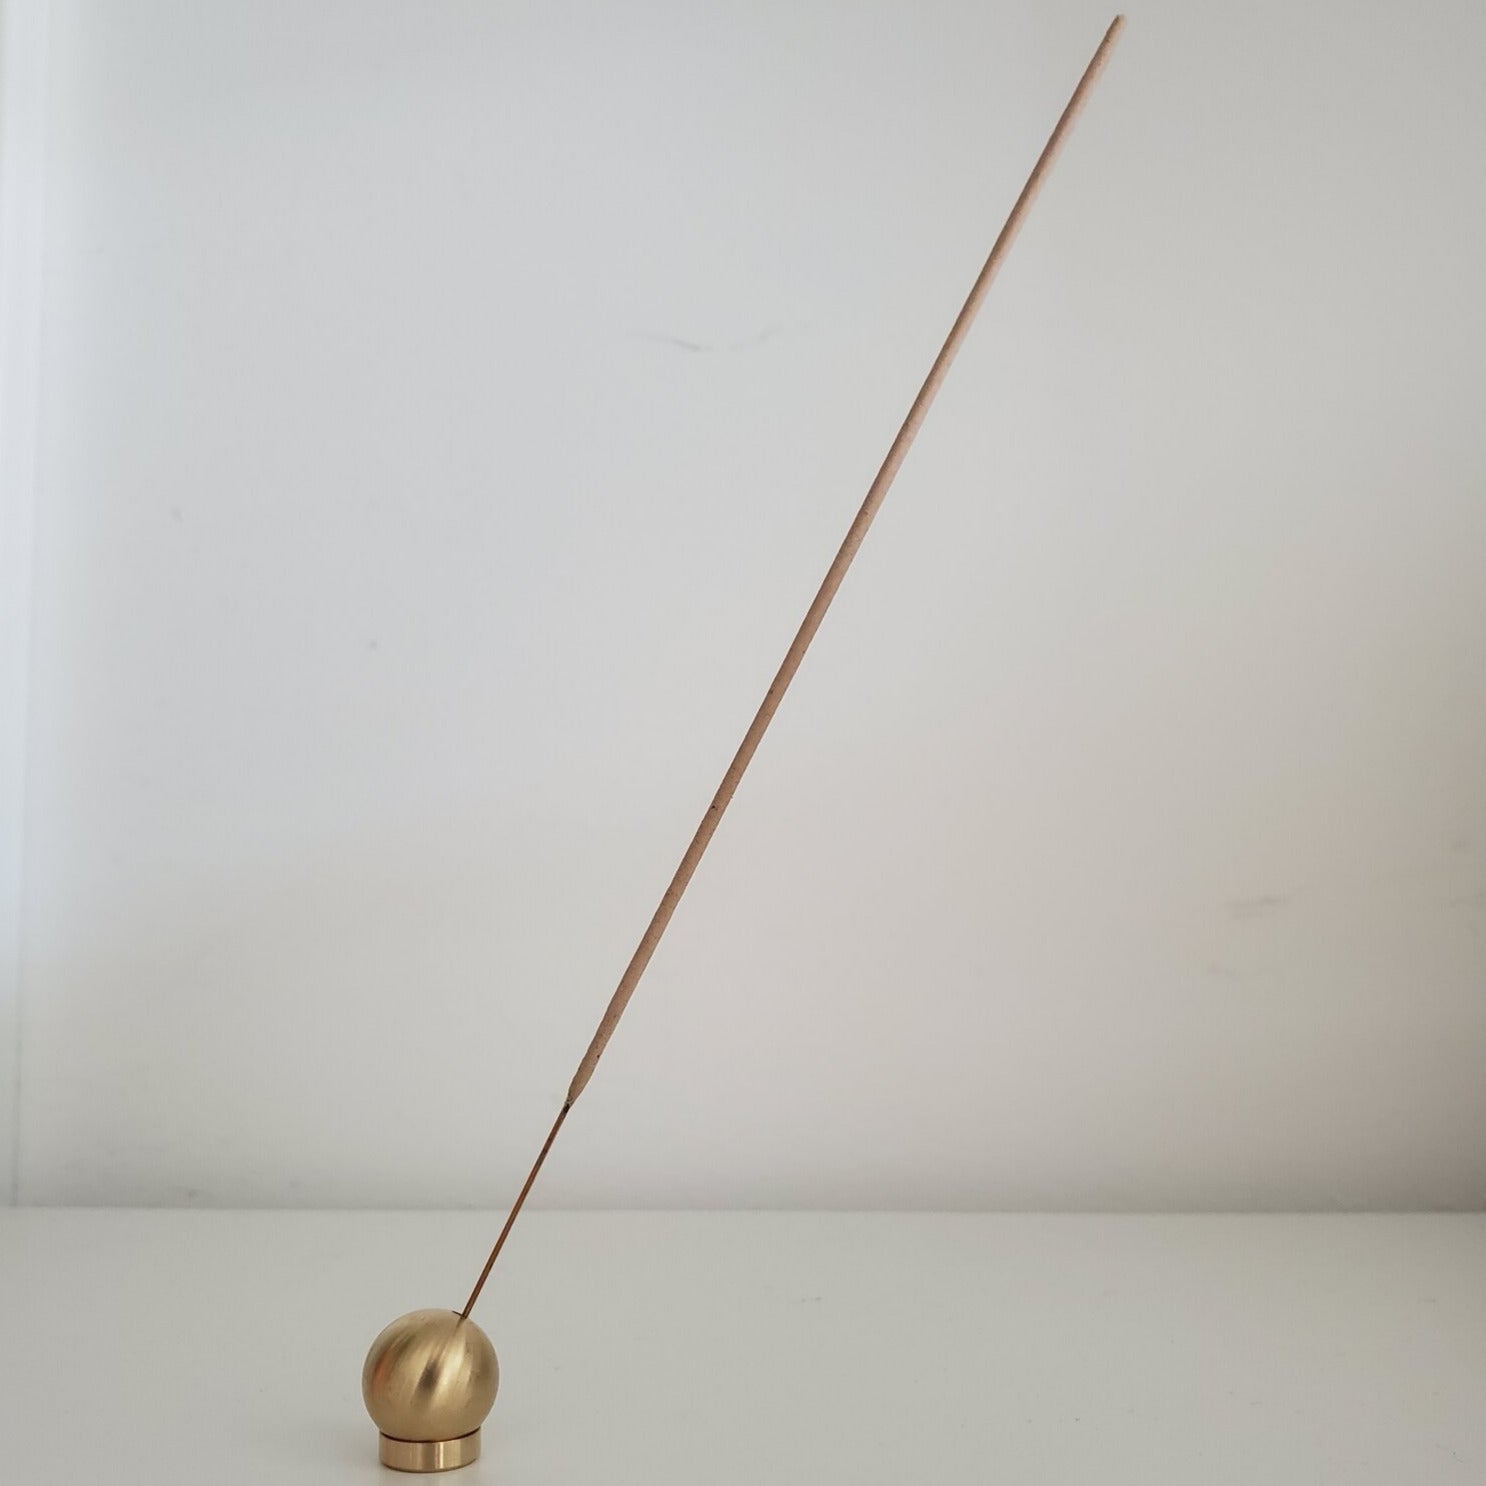 Sphere Incense Holder - Brushed Brass